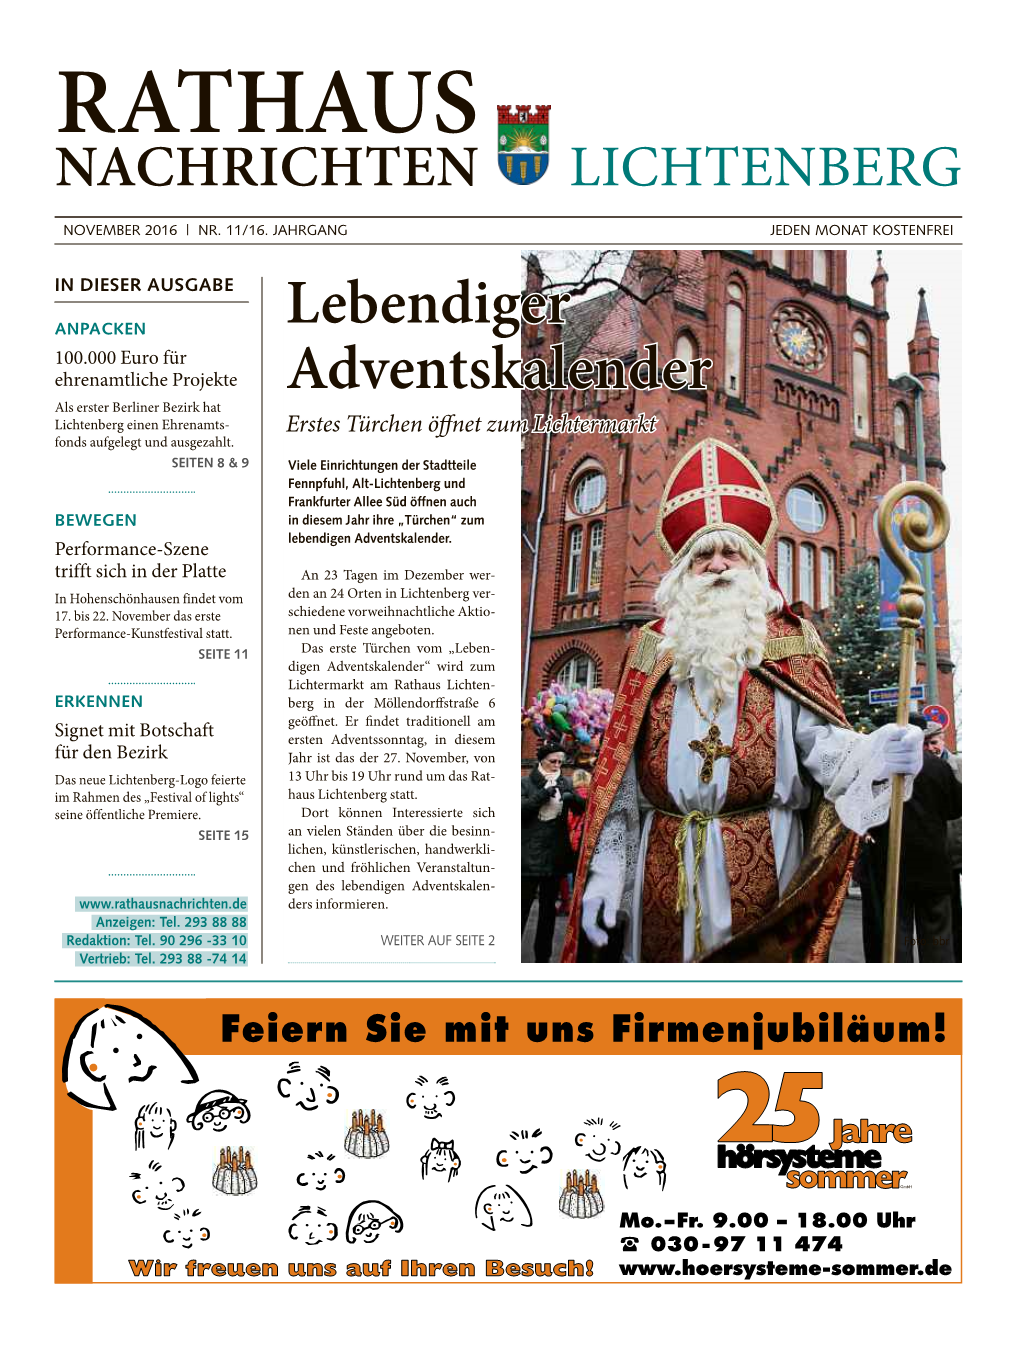 Rathaus Nachrichten Lichtenberg